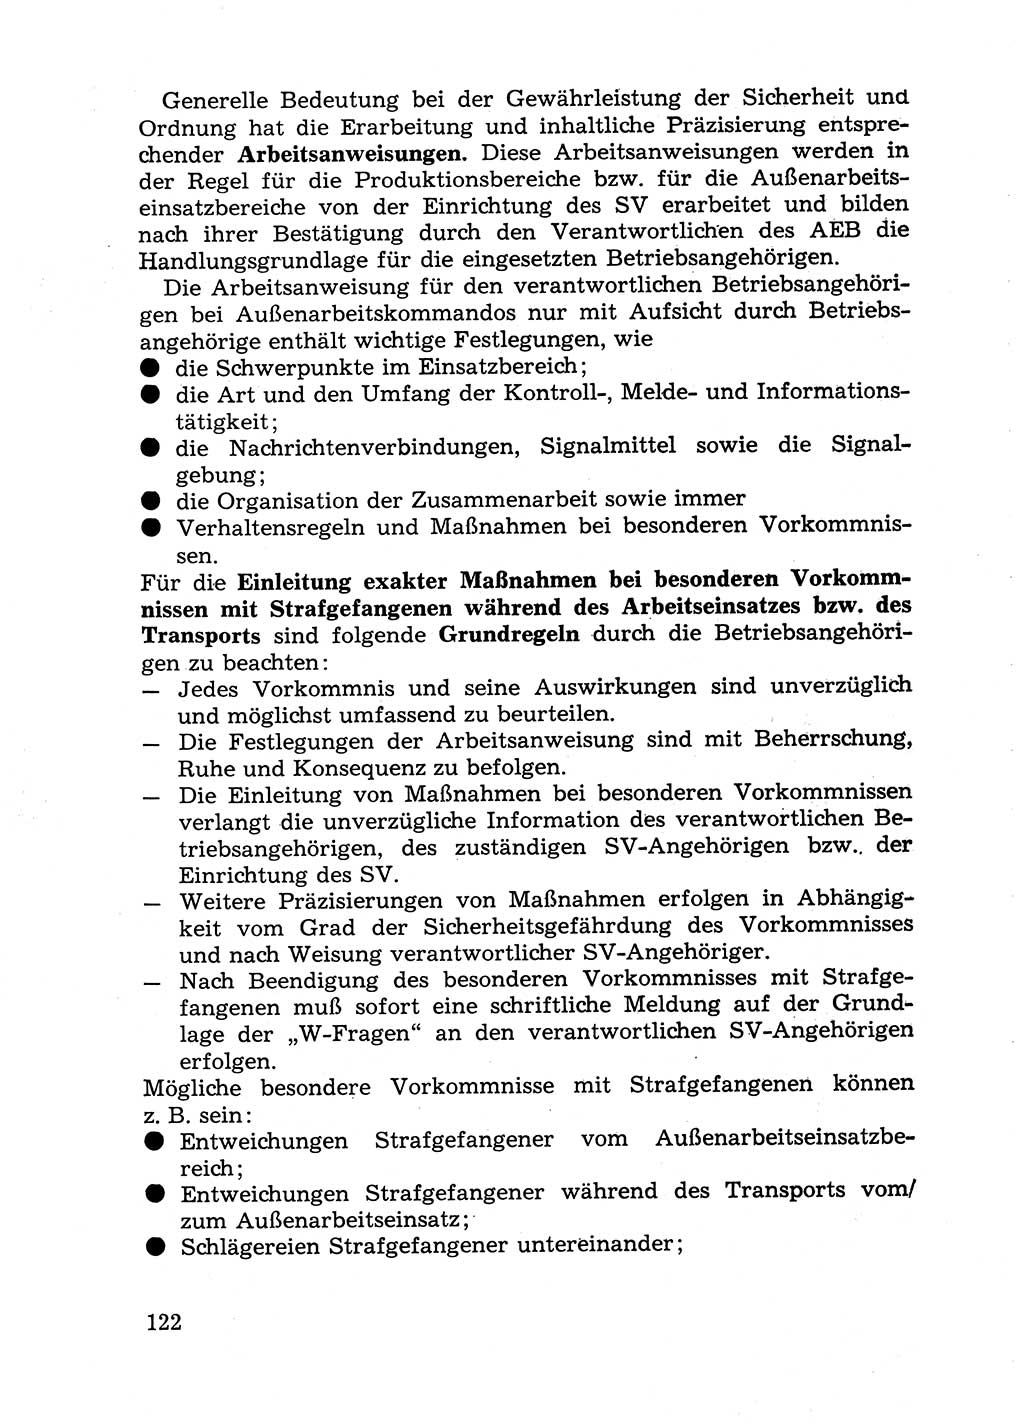 Handbuch für Betriebsangehörige, Abteilung Strafvollzug (SV) [Ministerium des Innern (MdI) Deutsche Demokratische Republik (DDR)] 1981, Seite 122 (Hb. BA Abt. SV MdI DDR 1981, S. 122)